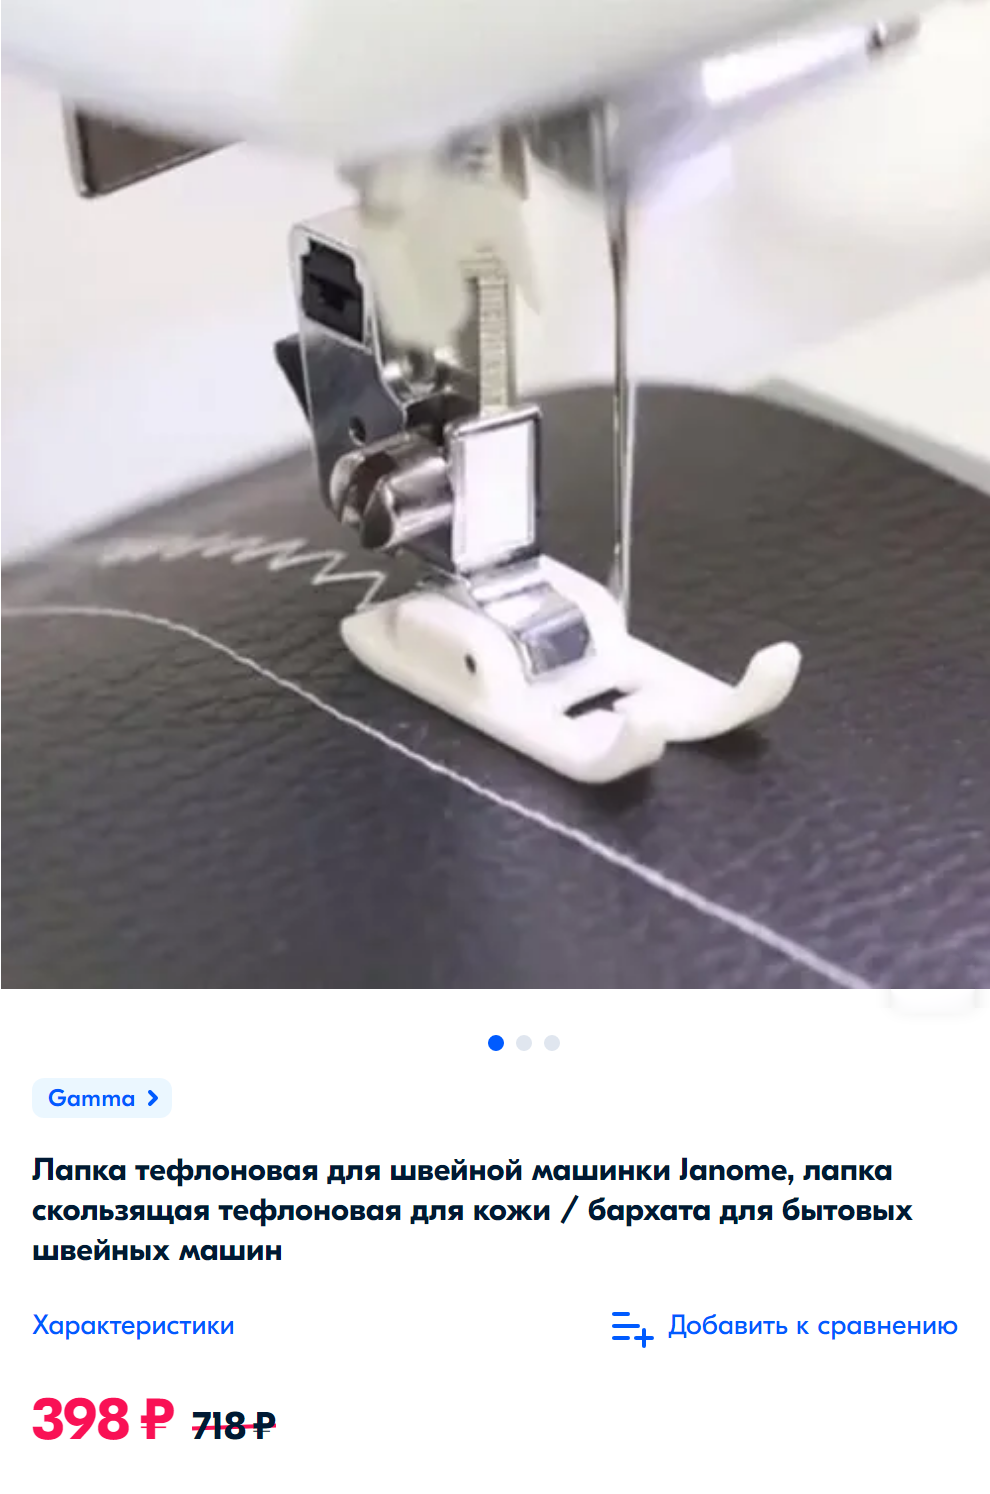 При&nbsp;выборе дополнительных лапок обращайте внимание, для&nbsp;швейных машинок каких фирм и моделей они подходят. Источник: ozon.ru